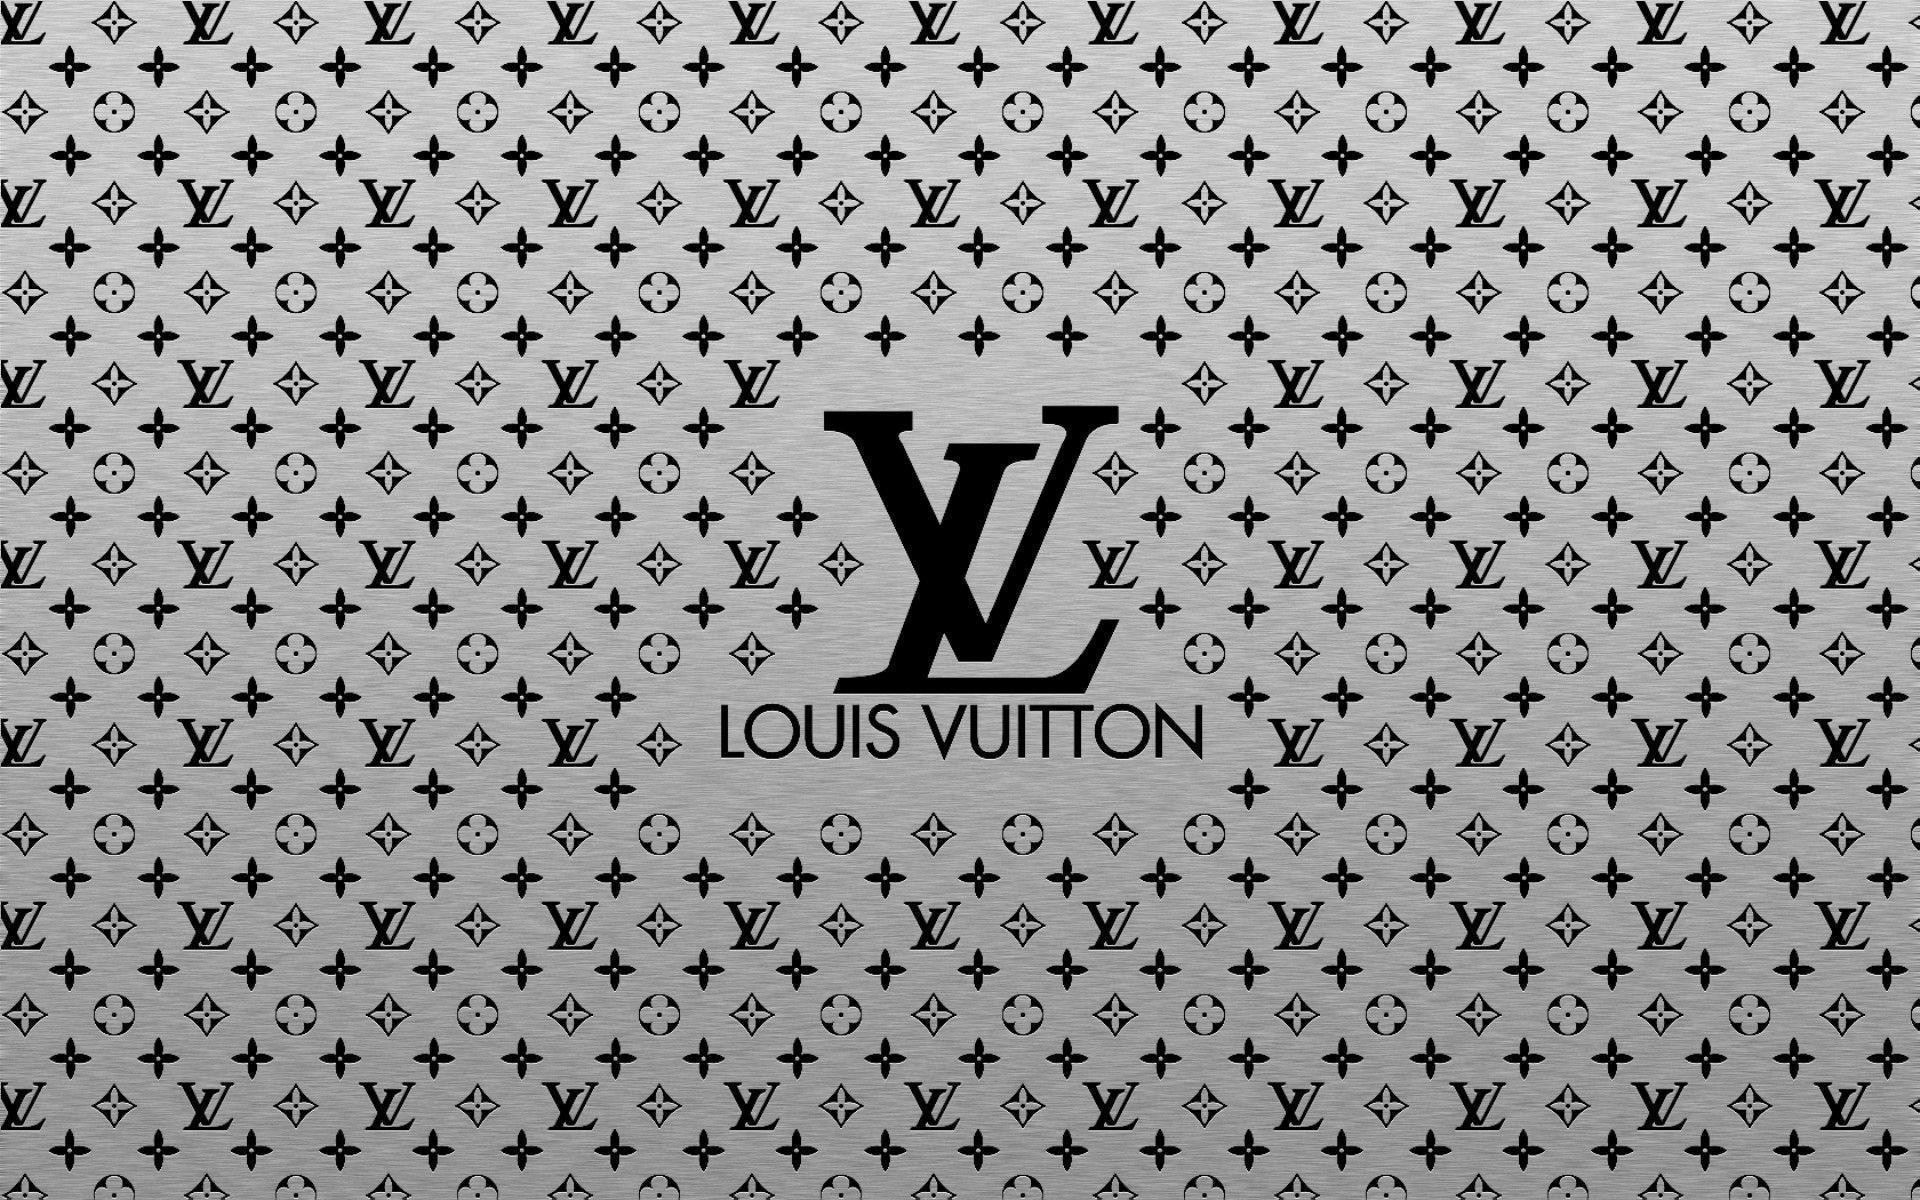 1920x1200 Fonds d'Ã©cran Louis Vuitton : tous les wallpapers Louis Vuitton